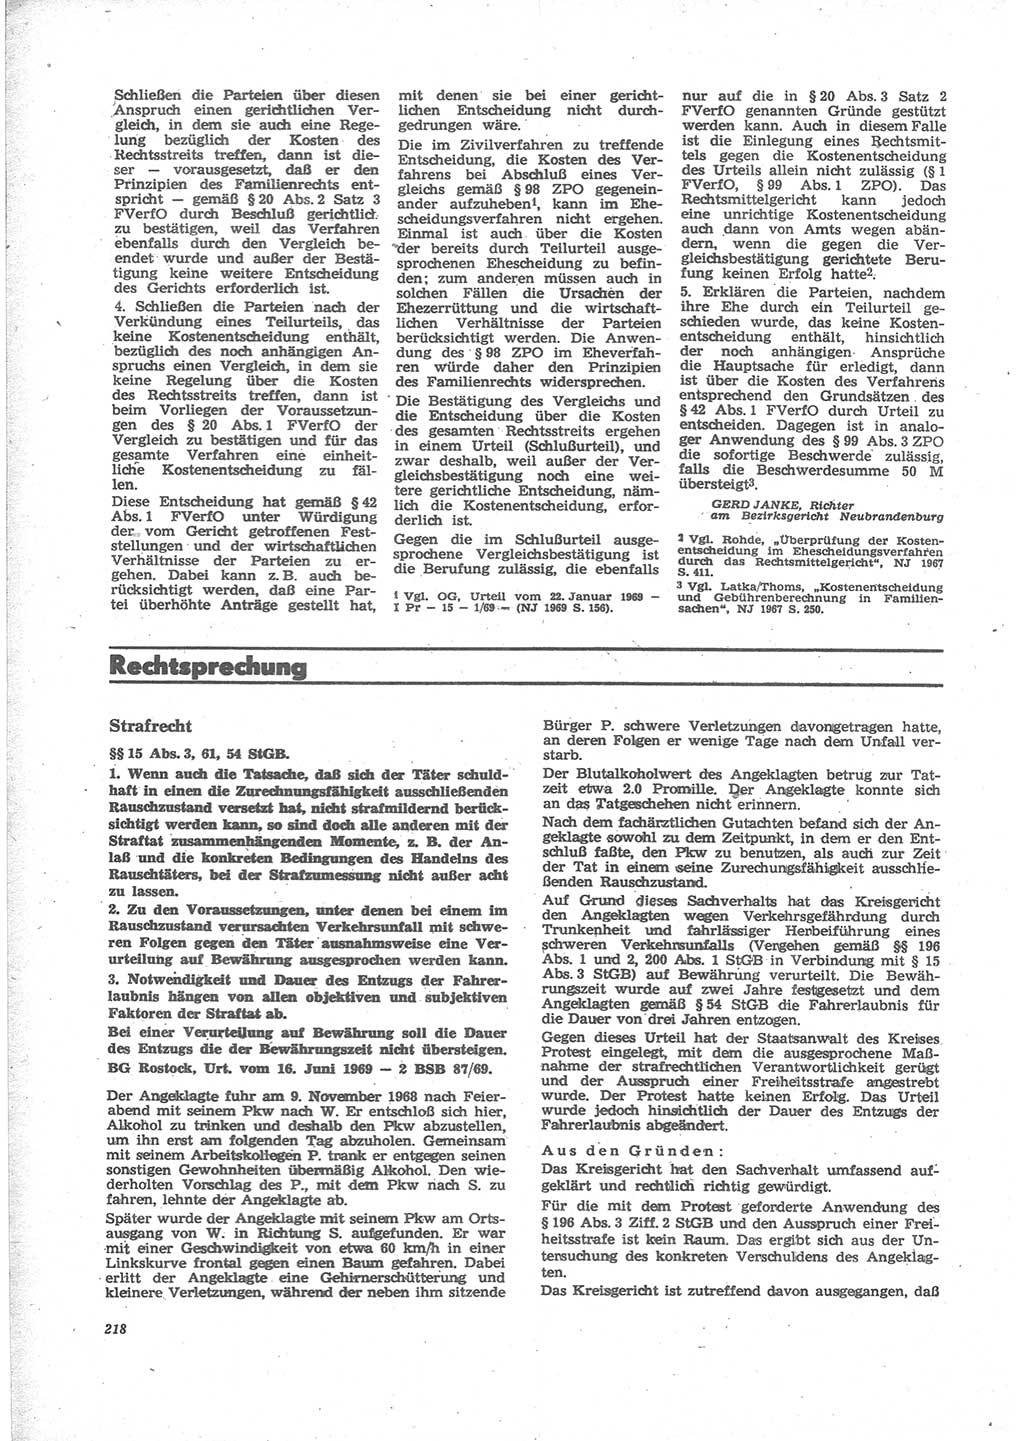 Neue Justiz (NJ), Zeitschrift für Recht und Rechtswissenschaft [Deutsche Demokratische Republik (DDR)], 24. Jahrgang 1970, Seite 218 (NJ DDR 1970, S. 218)